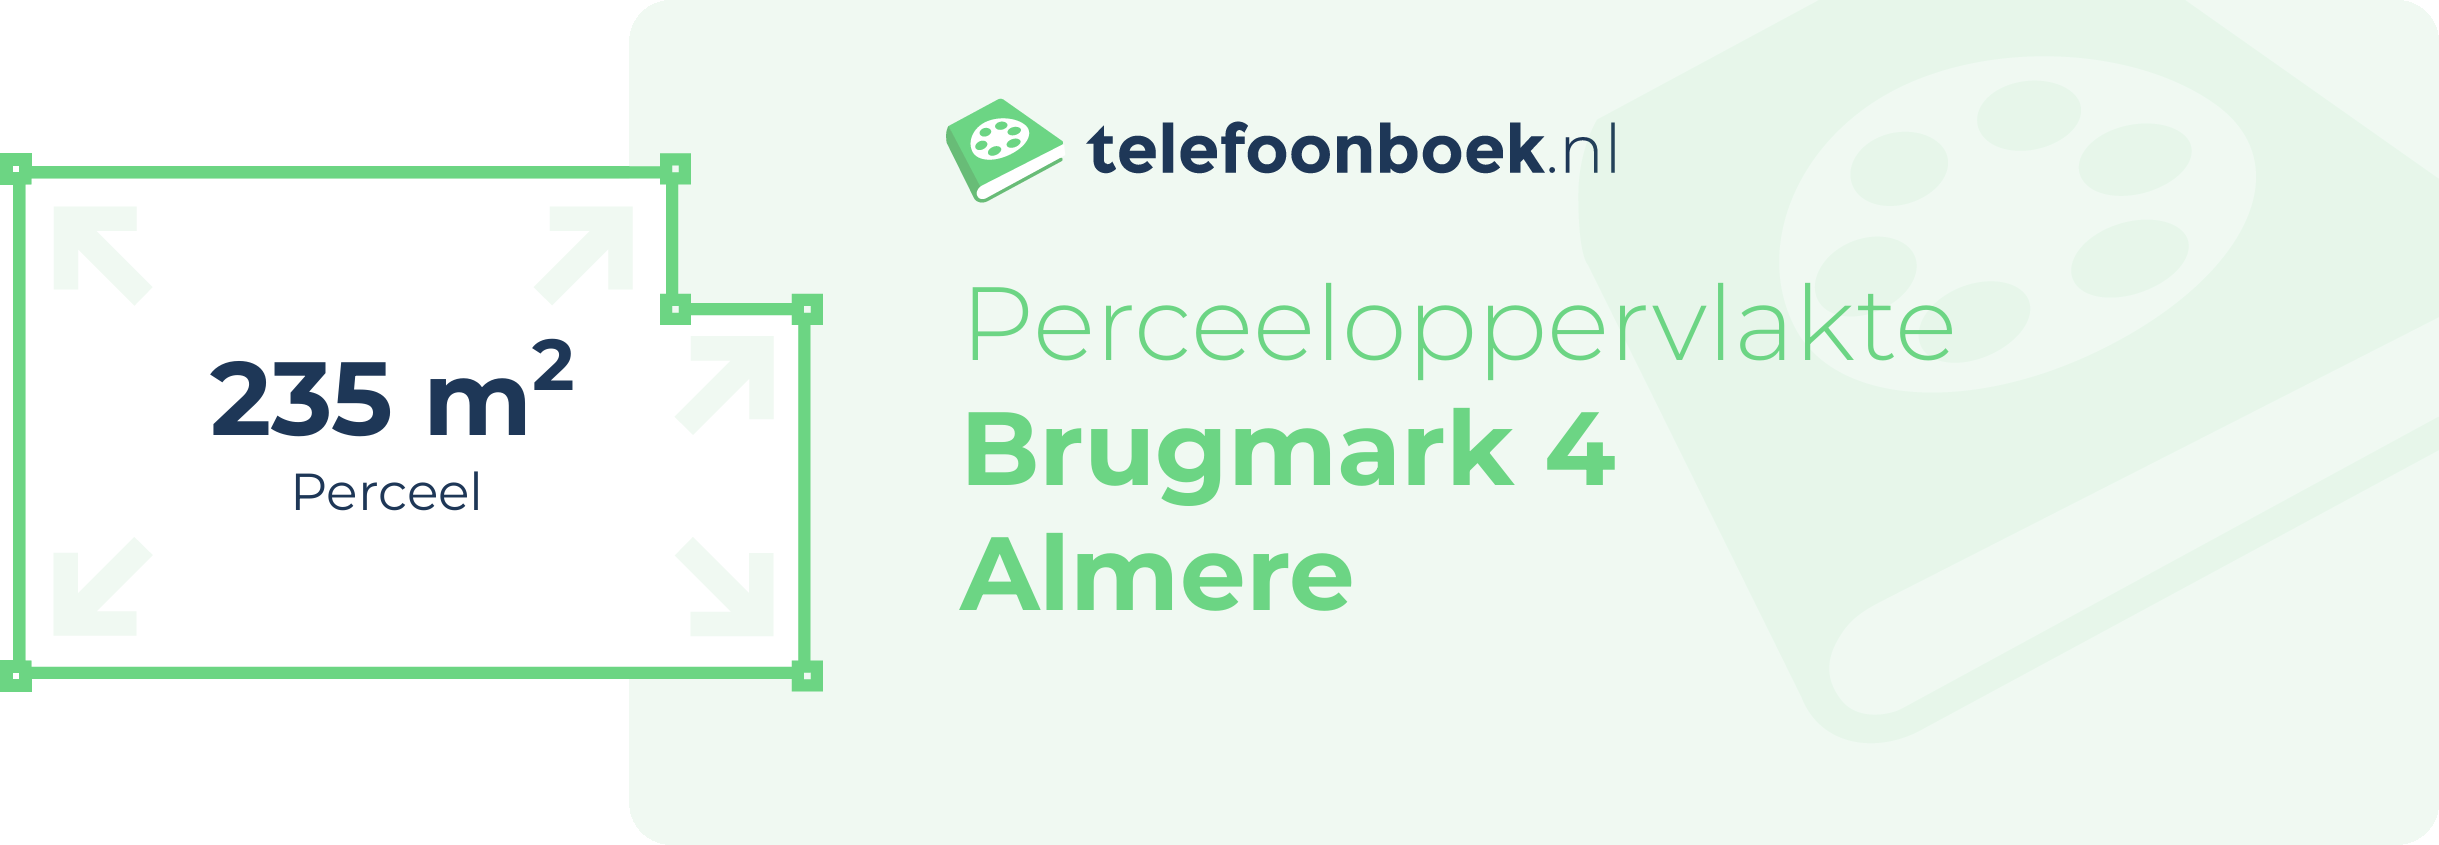 Perceeloppervlakte Brugmark 4 Almere